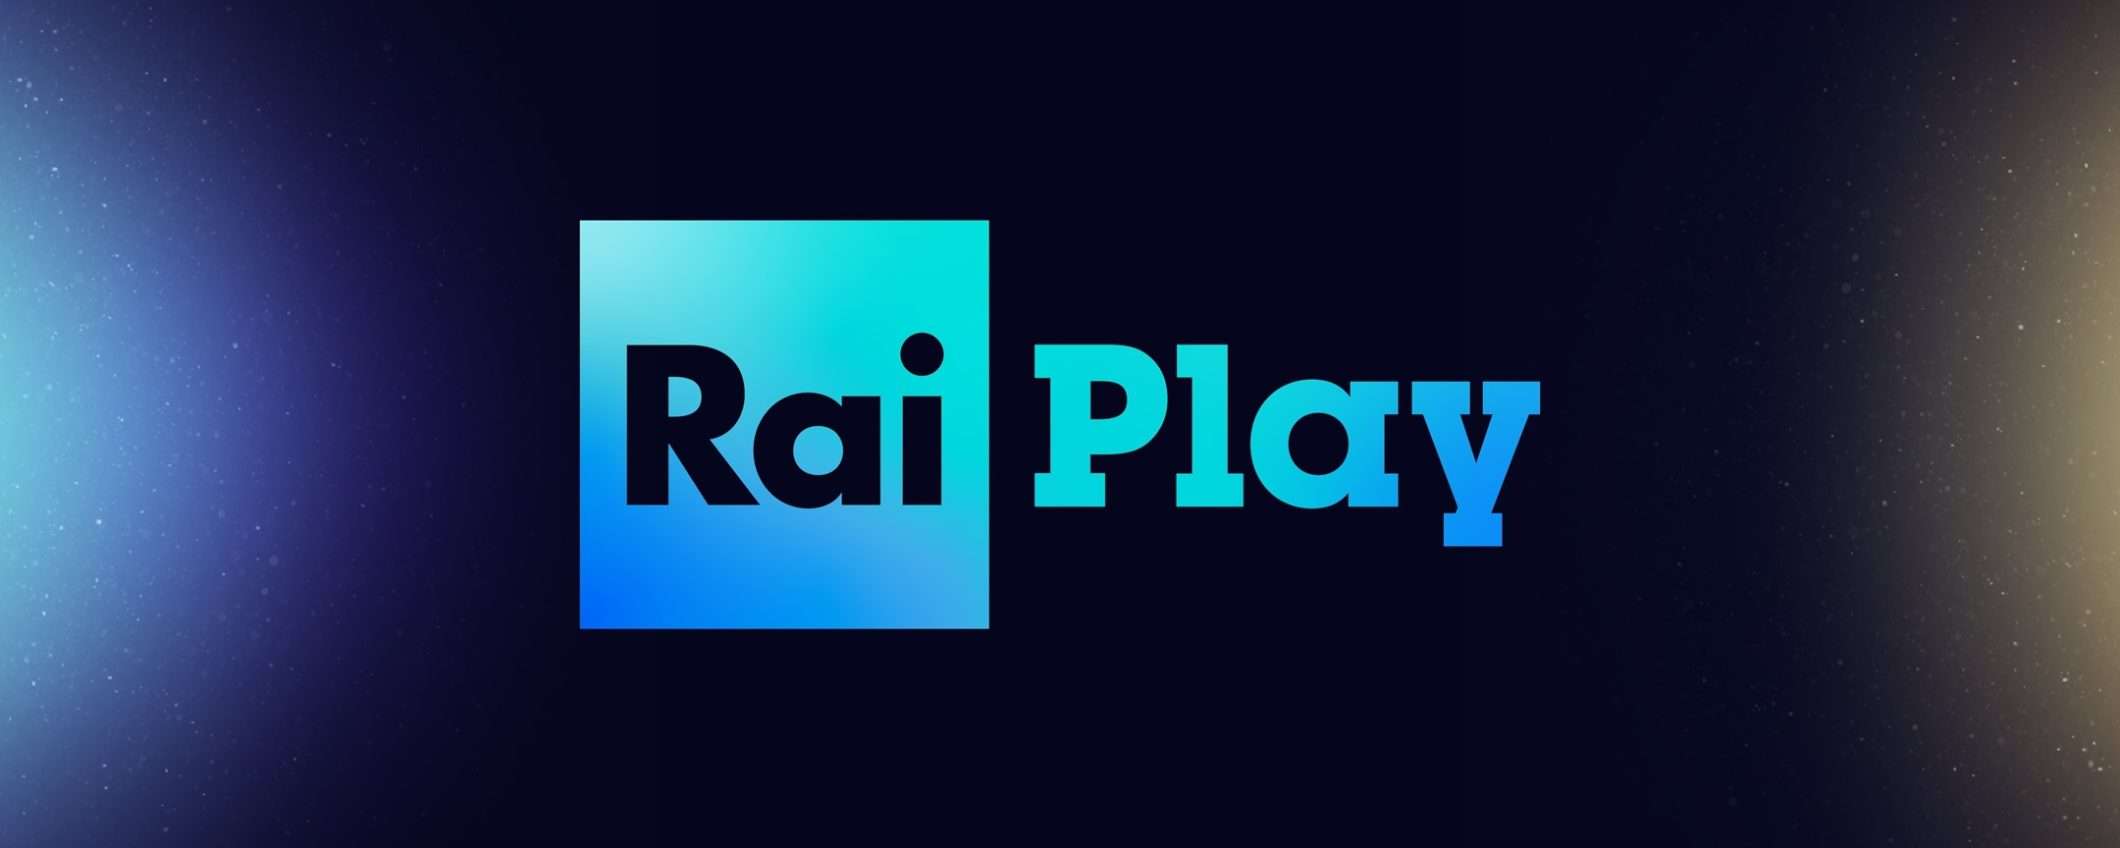 Come vedere RaiPlay dall'estero: la procedura per guardare la TV da fuori Italia